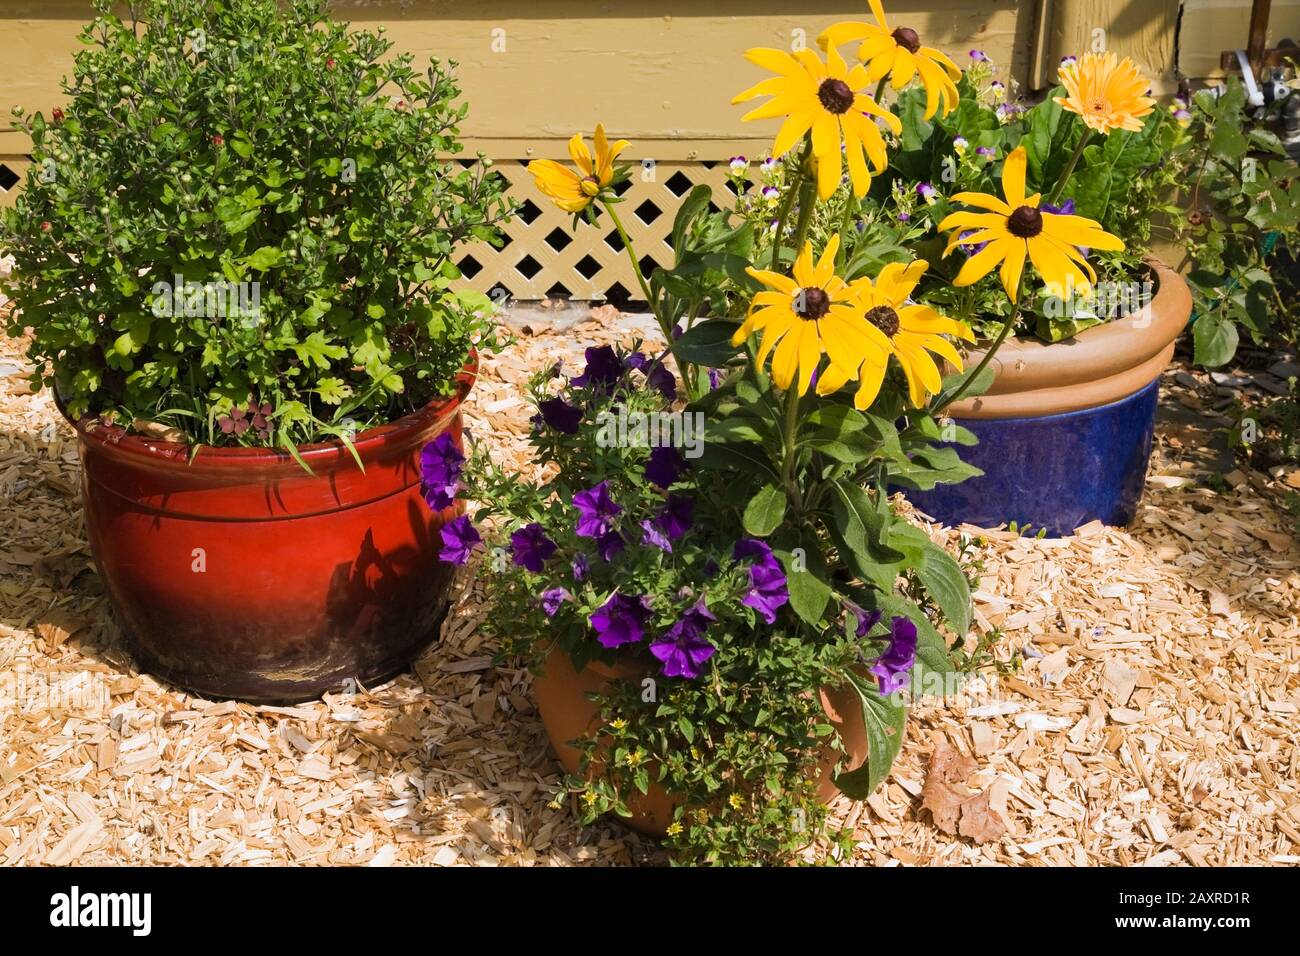 Planteuses rouges, en terre cuite et bleues avec fleurs, y compris les pétunias pourpres, les Rudbeckias jaunes - Coneflowers dans la bordure de paillis de cèdre à côté de la maison jaune. Banque D'Images